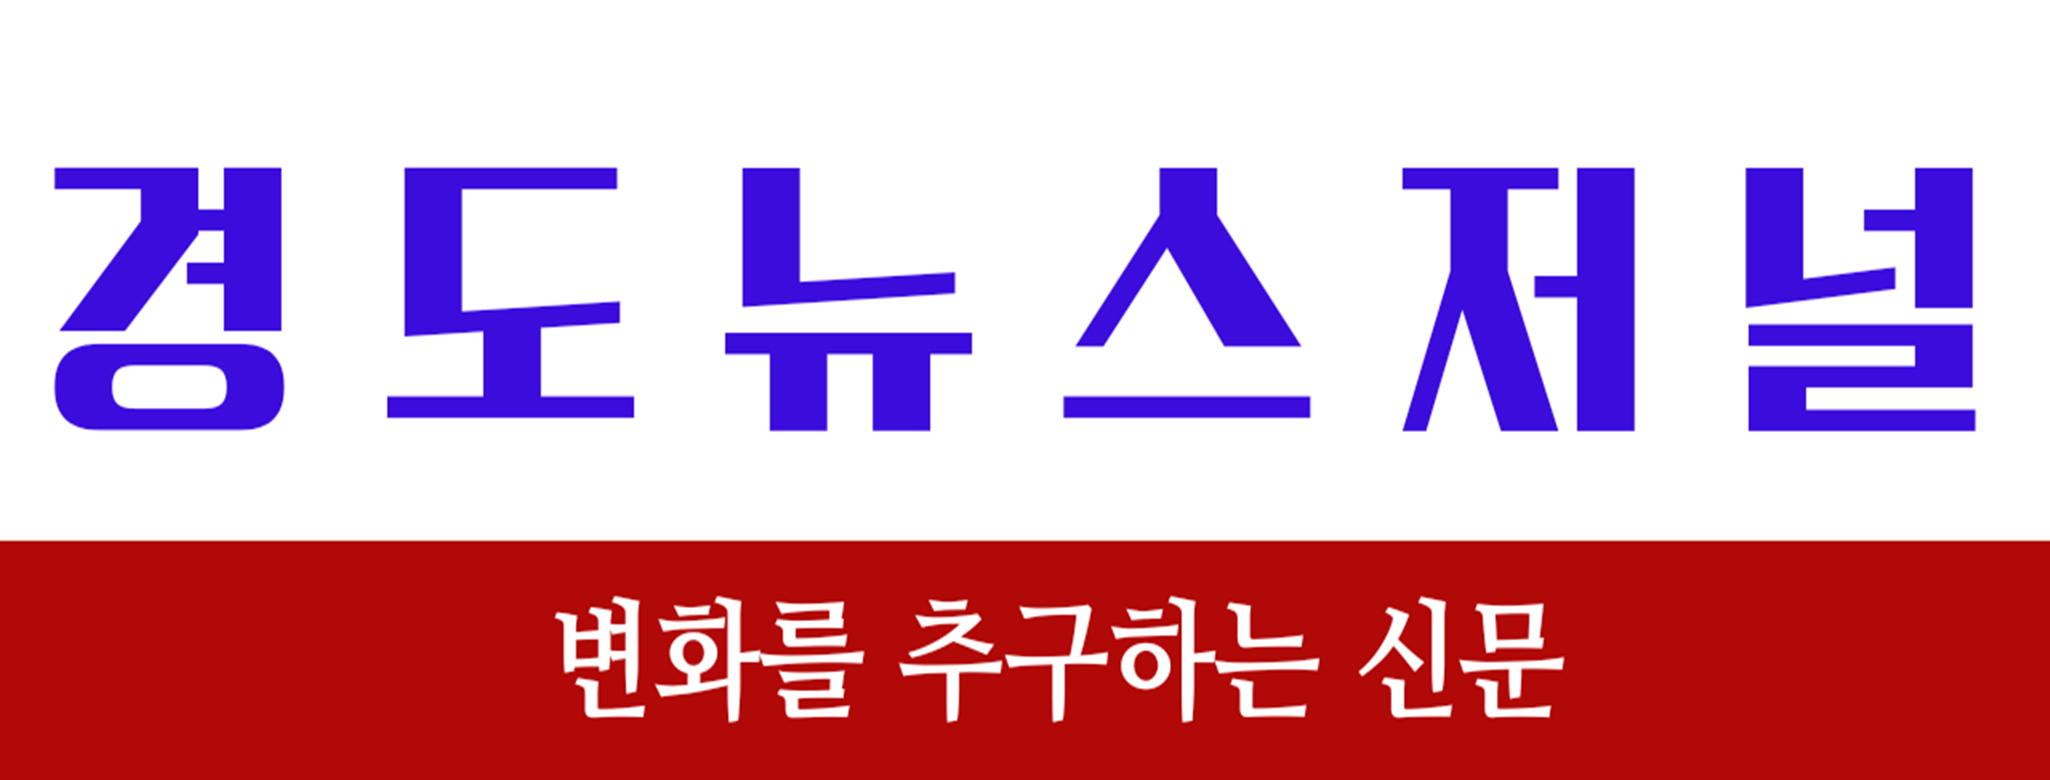 경도뉴스저널 로고